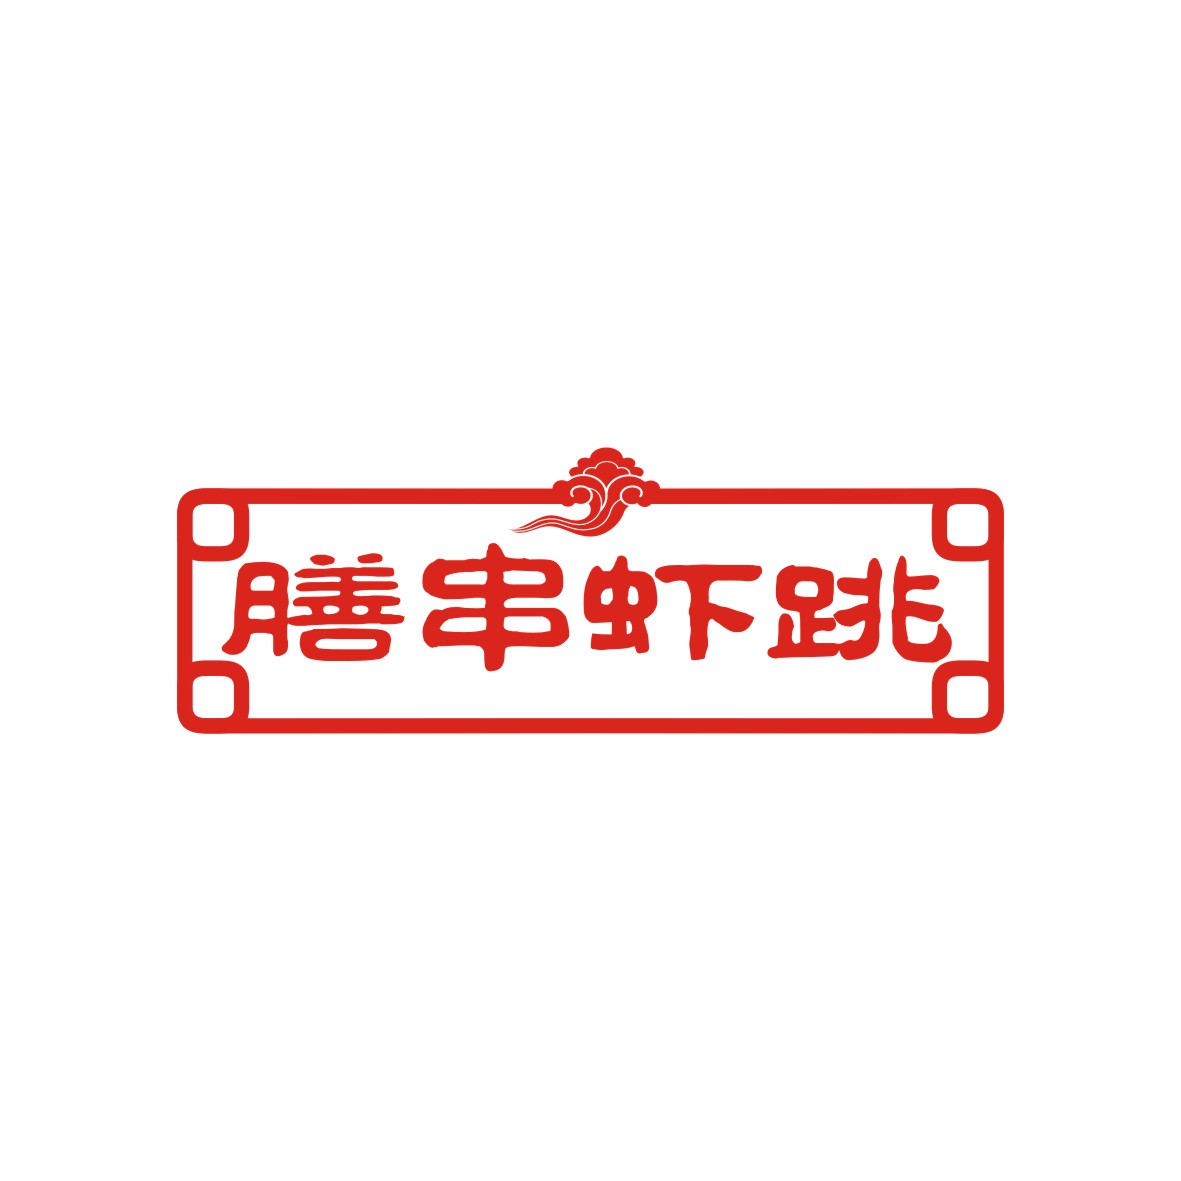 广州品翰文化发展有限公司商标膳串虾跳（43类）多少钱？